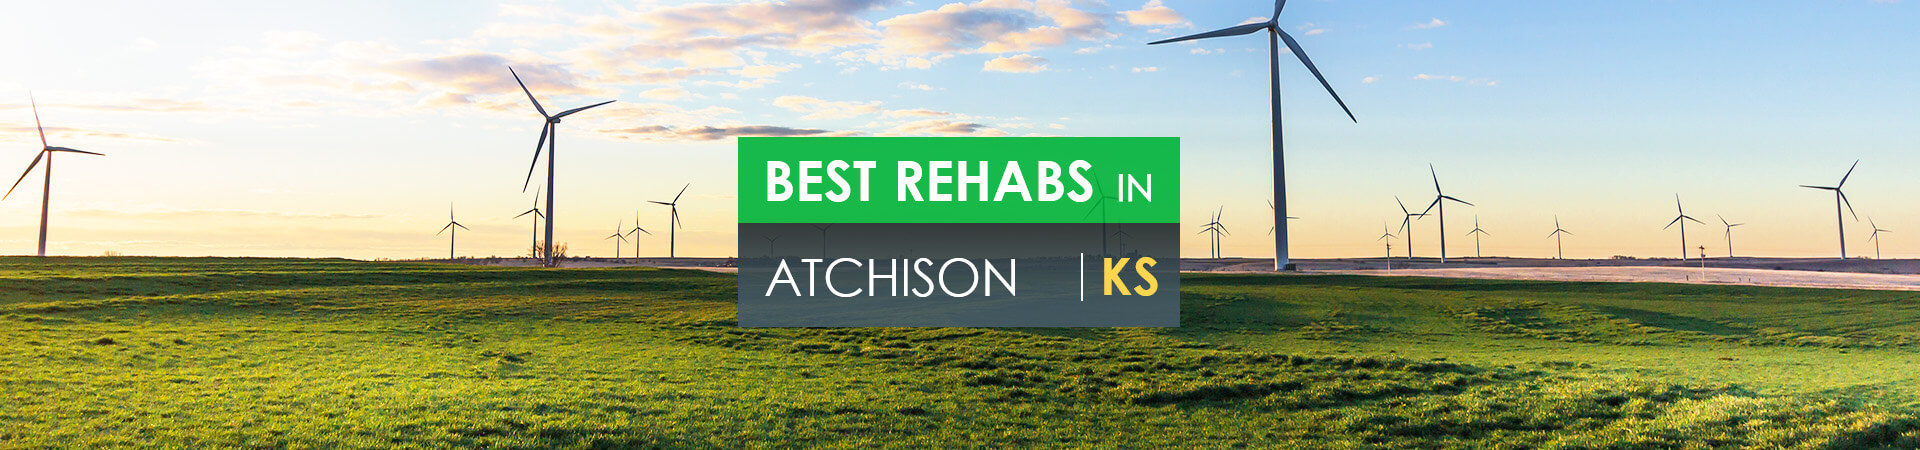 Best rehabs in Atchison, KS